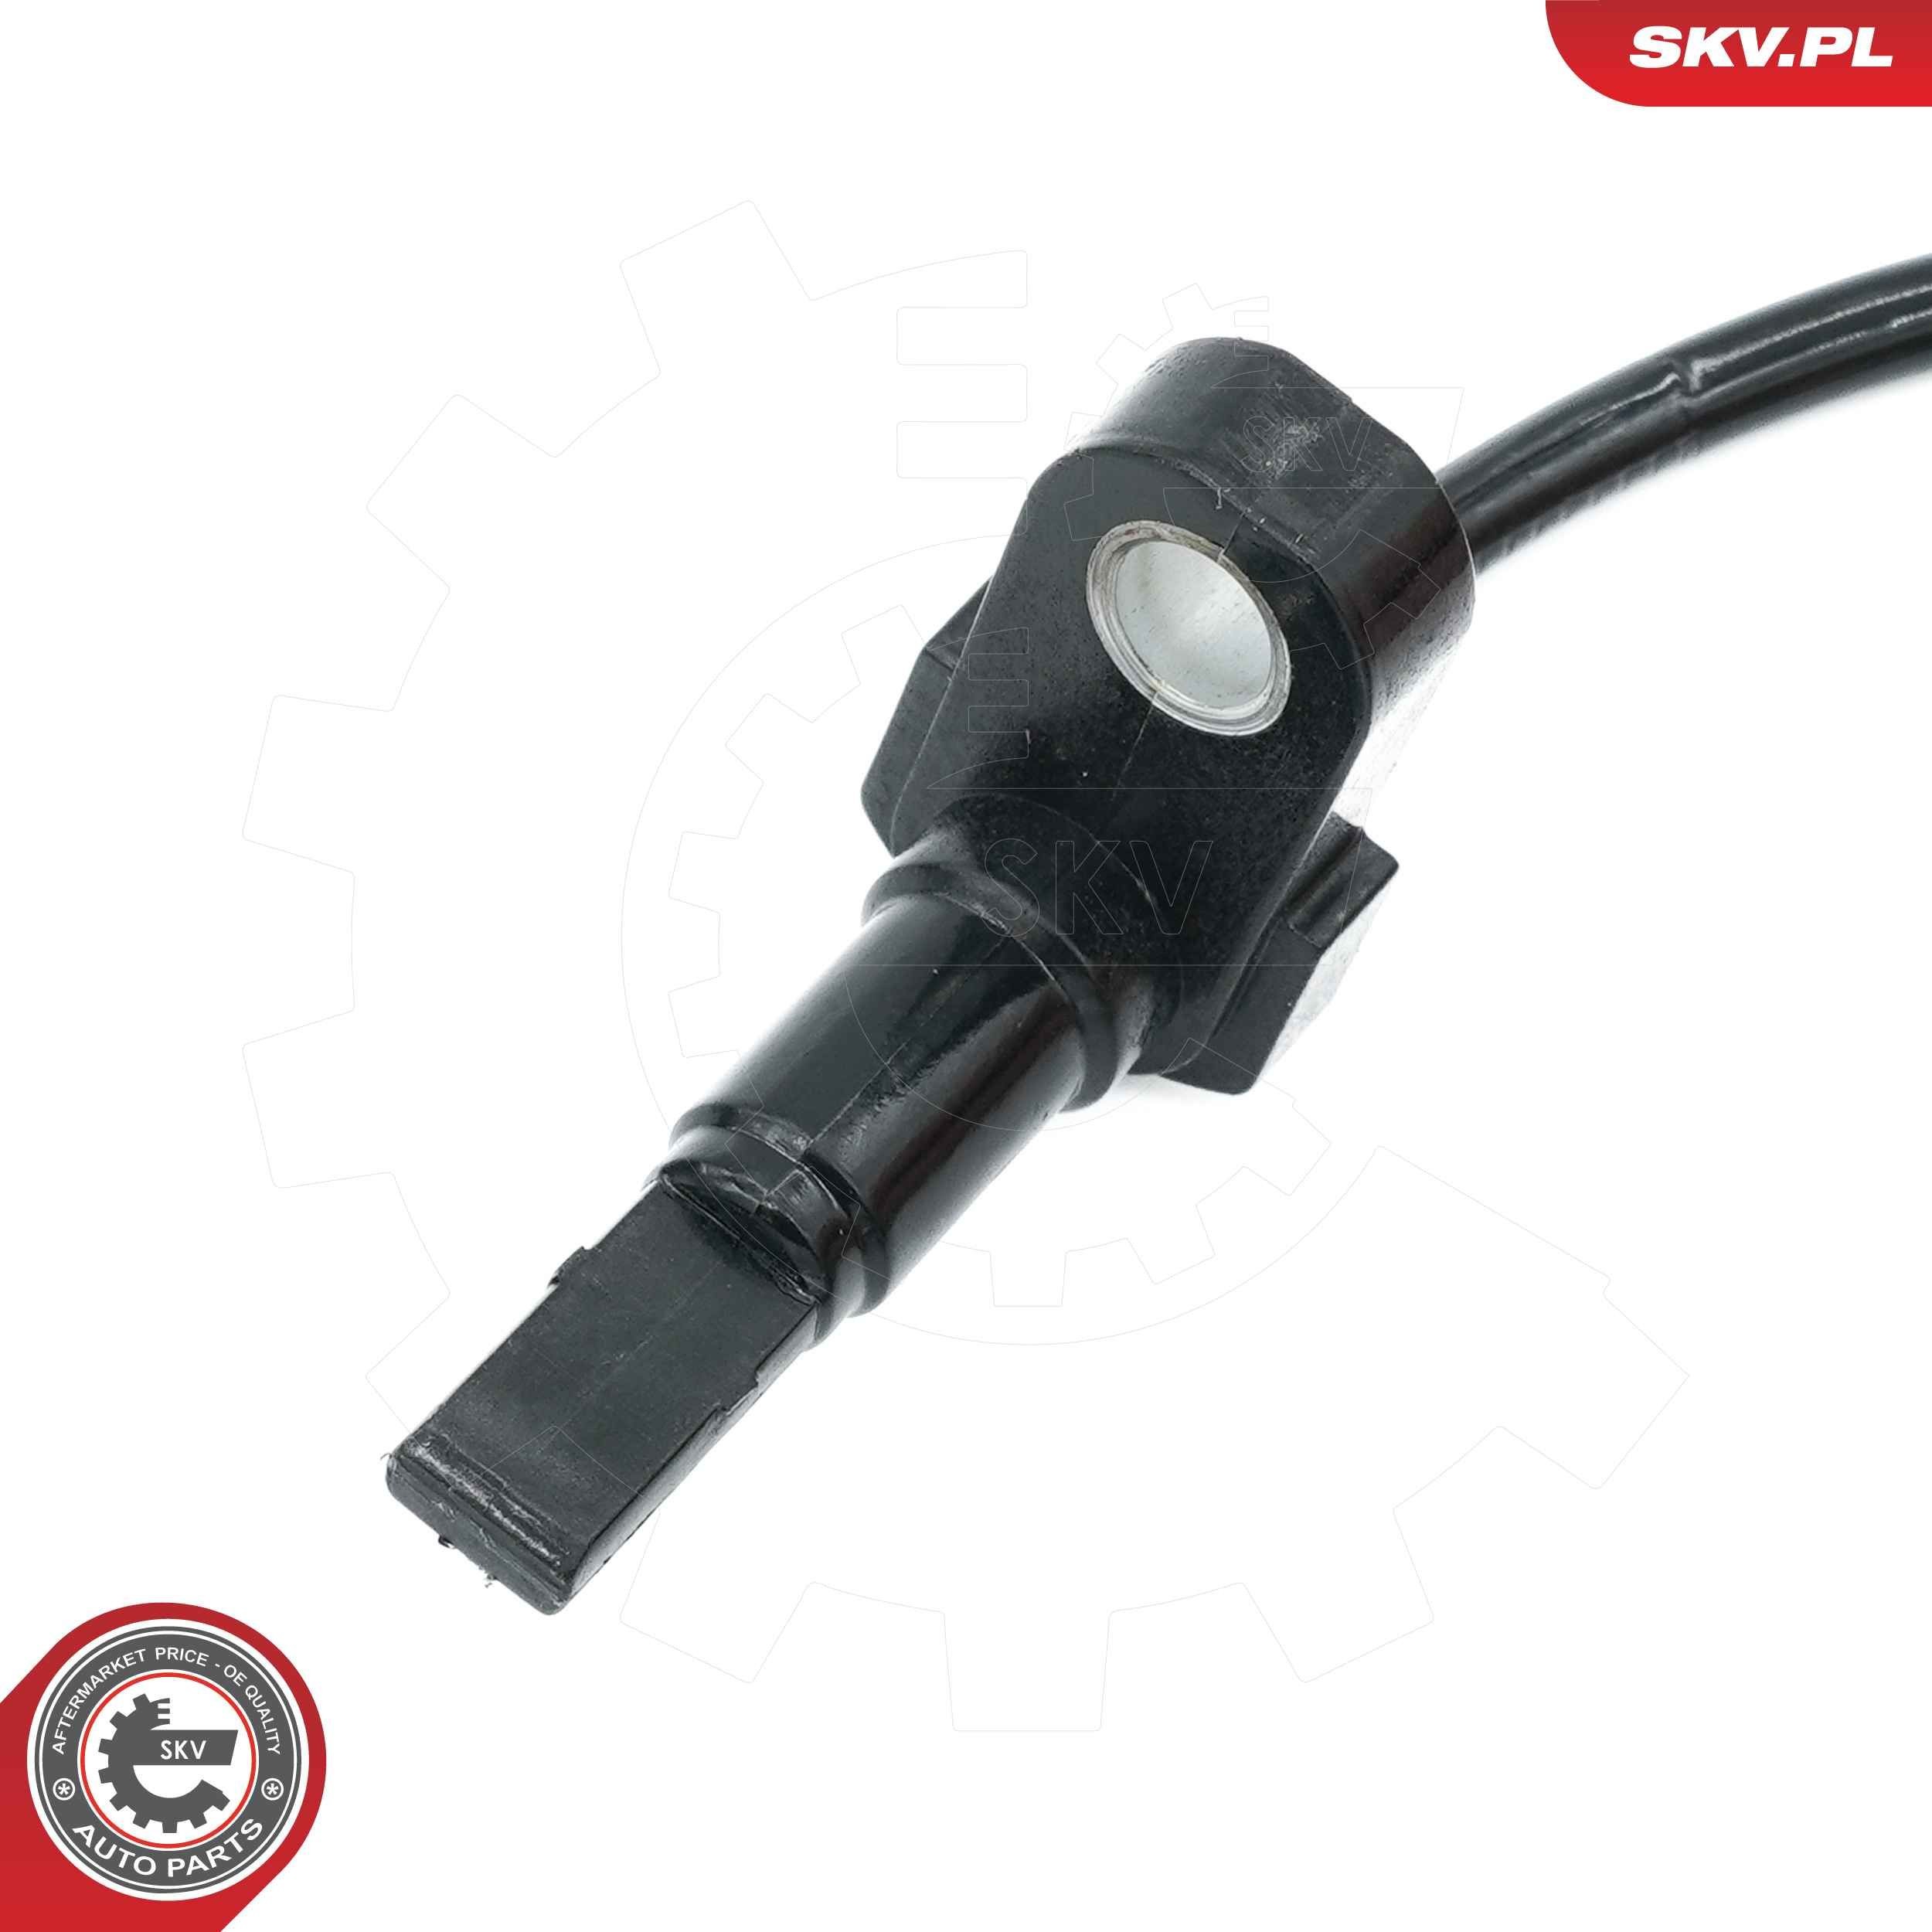 ESEN SKV 06SKV532 ABS sensor Rear Axle Left, 2-pin connector, 1010mm, 111mm, black